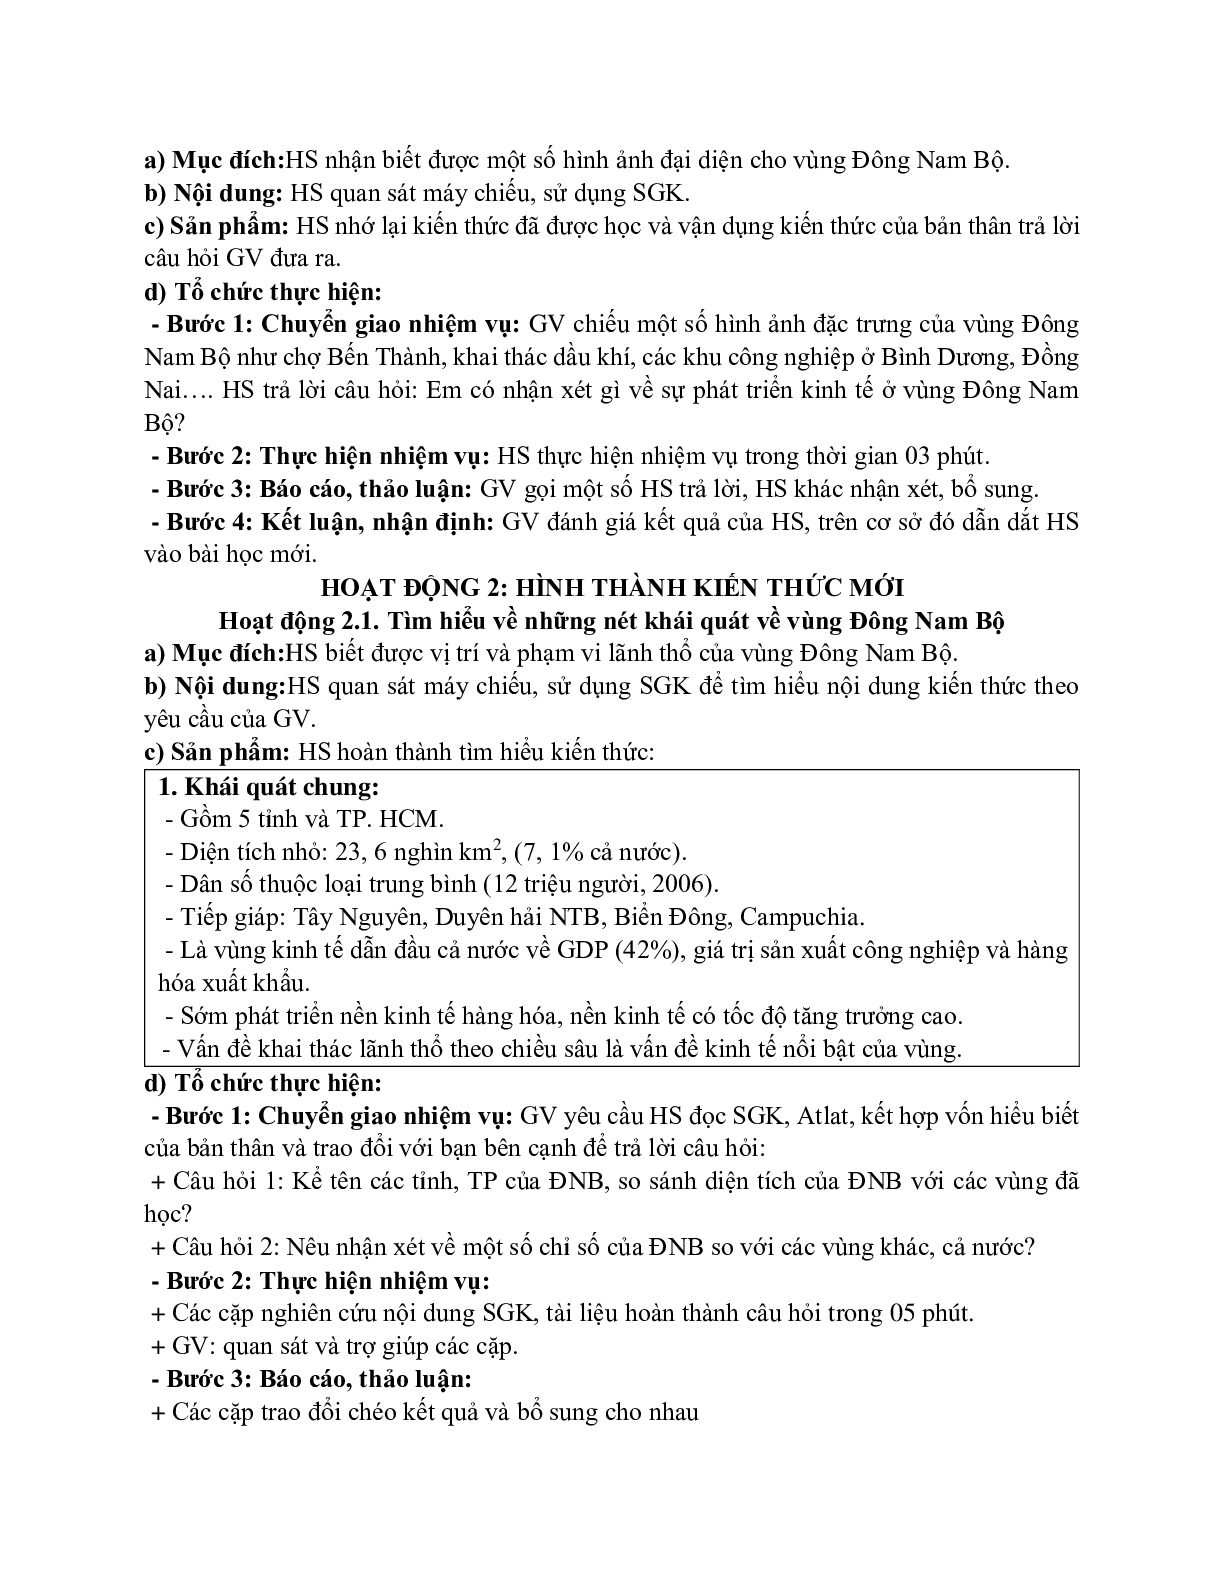 Giáo án Địa lí 12 Bài 39 Vấn đề khai thác lãnh thổ theo chiều sâu ở Đông Nam Bộ mới nhất (trang 2)